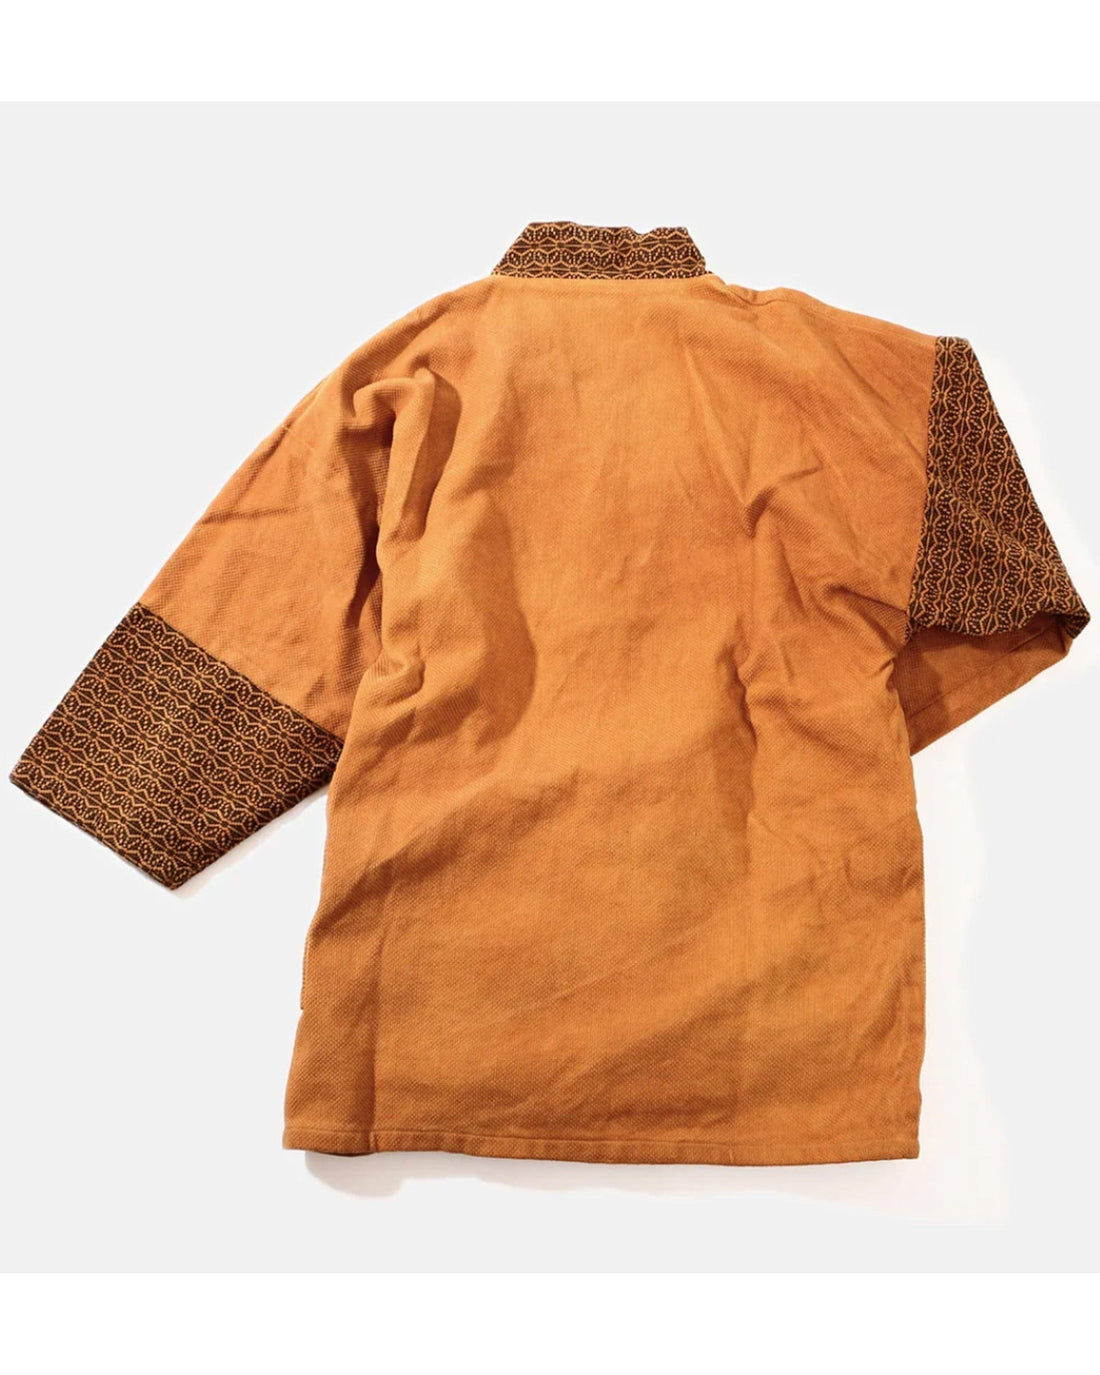 Mastercraftsmanship Patchwork Samue Jacket (Kakishibu) Sashiko - Kimono style